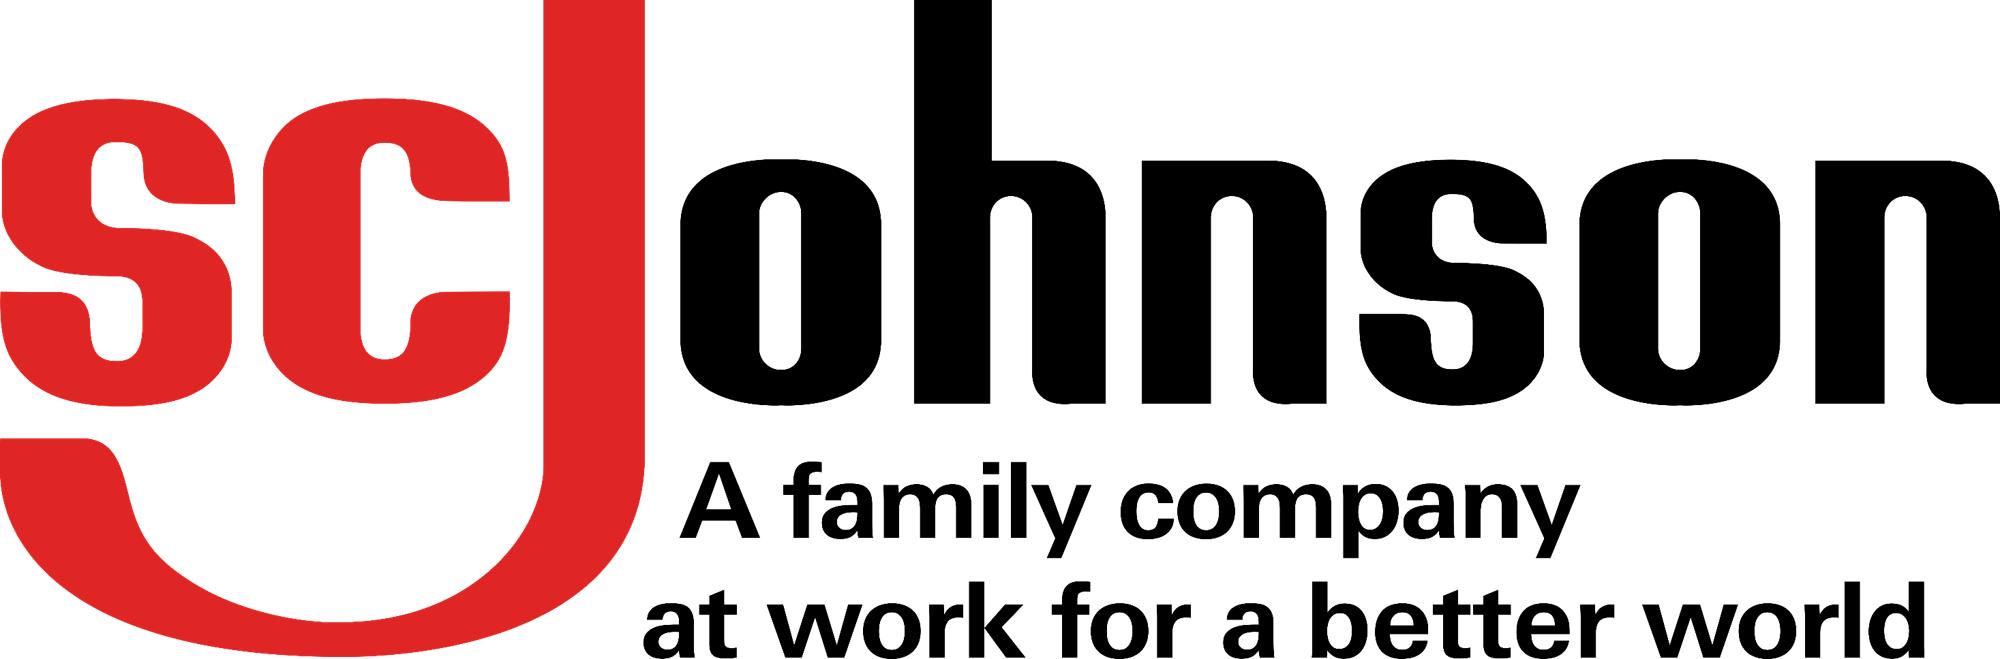 Hohnson Logo - S. C. Johnson & Son | Logopedia | FANDOM powered by Wikia